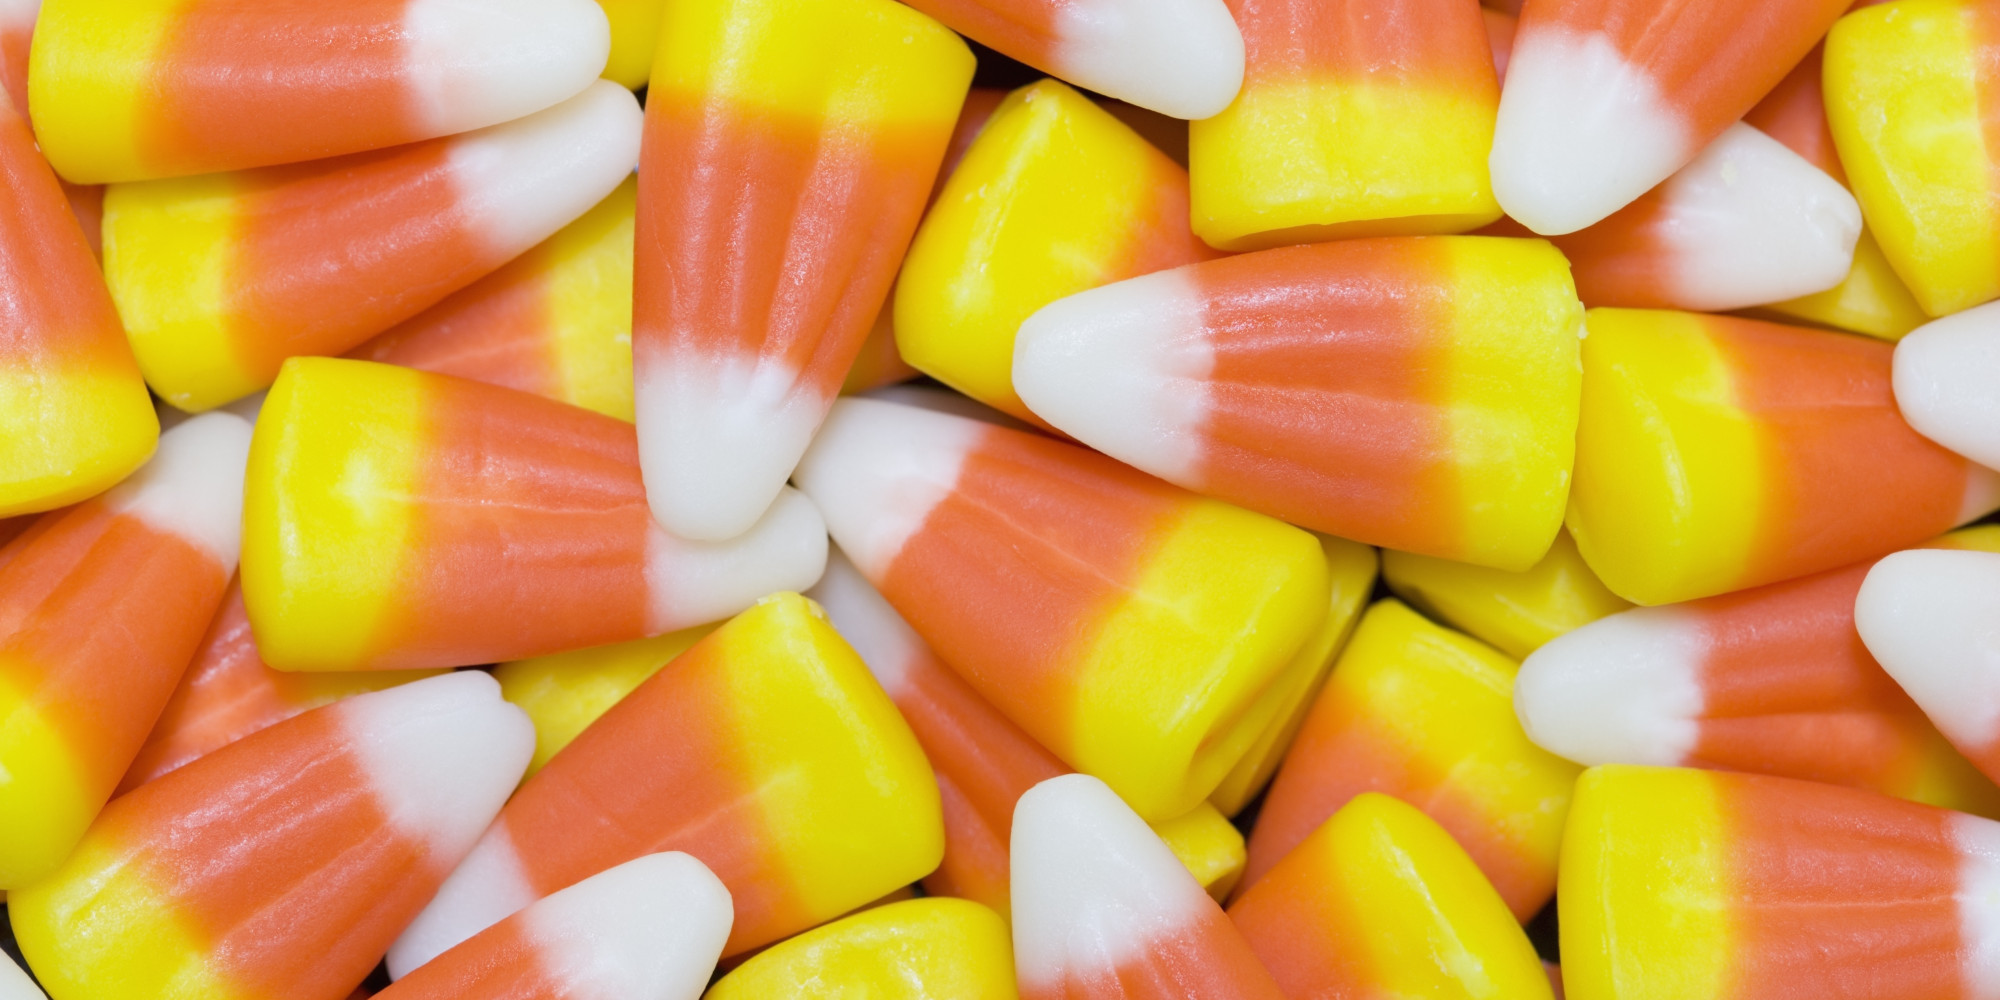 candy corn2.jpg